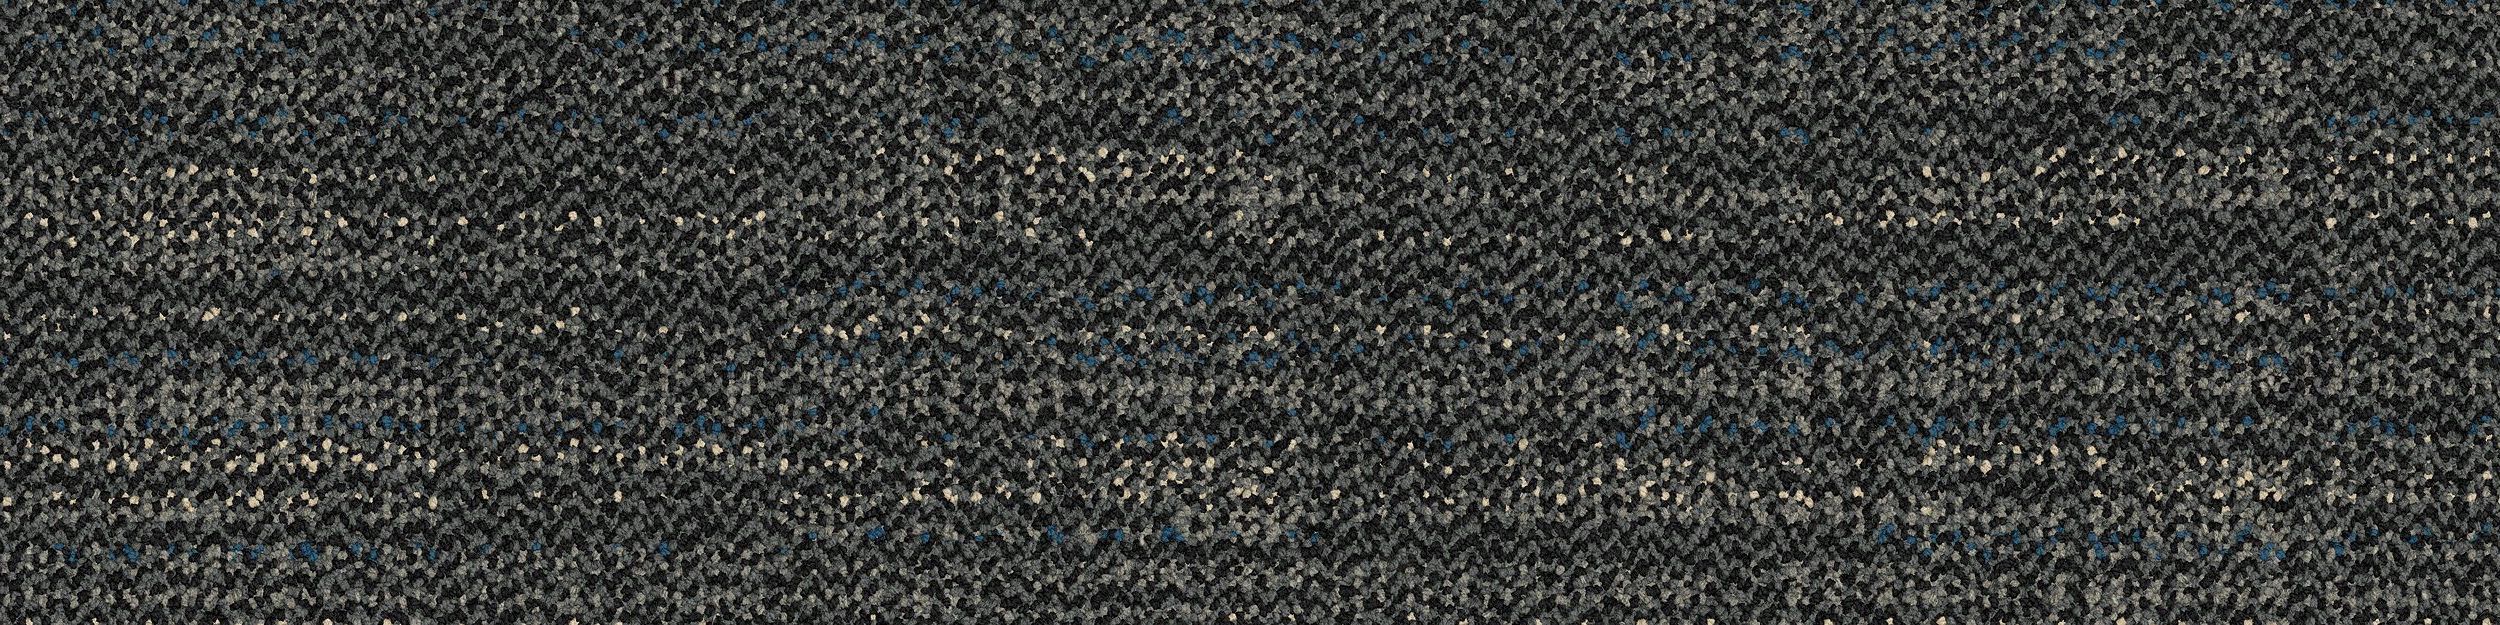 Bitrate Carpet Tile In Dark Aqua image number 2